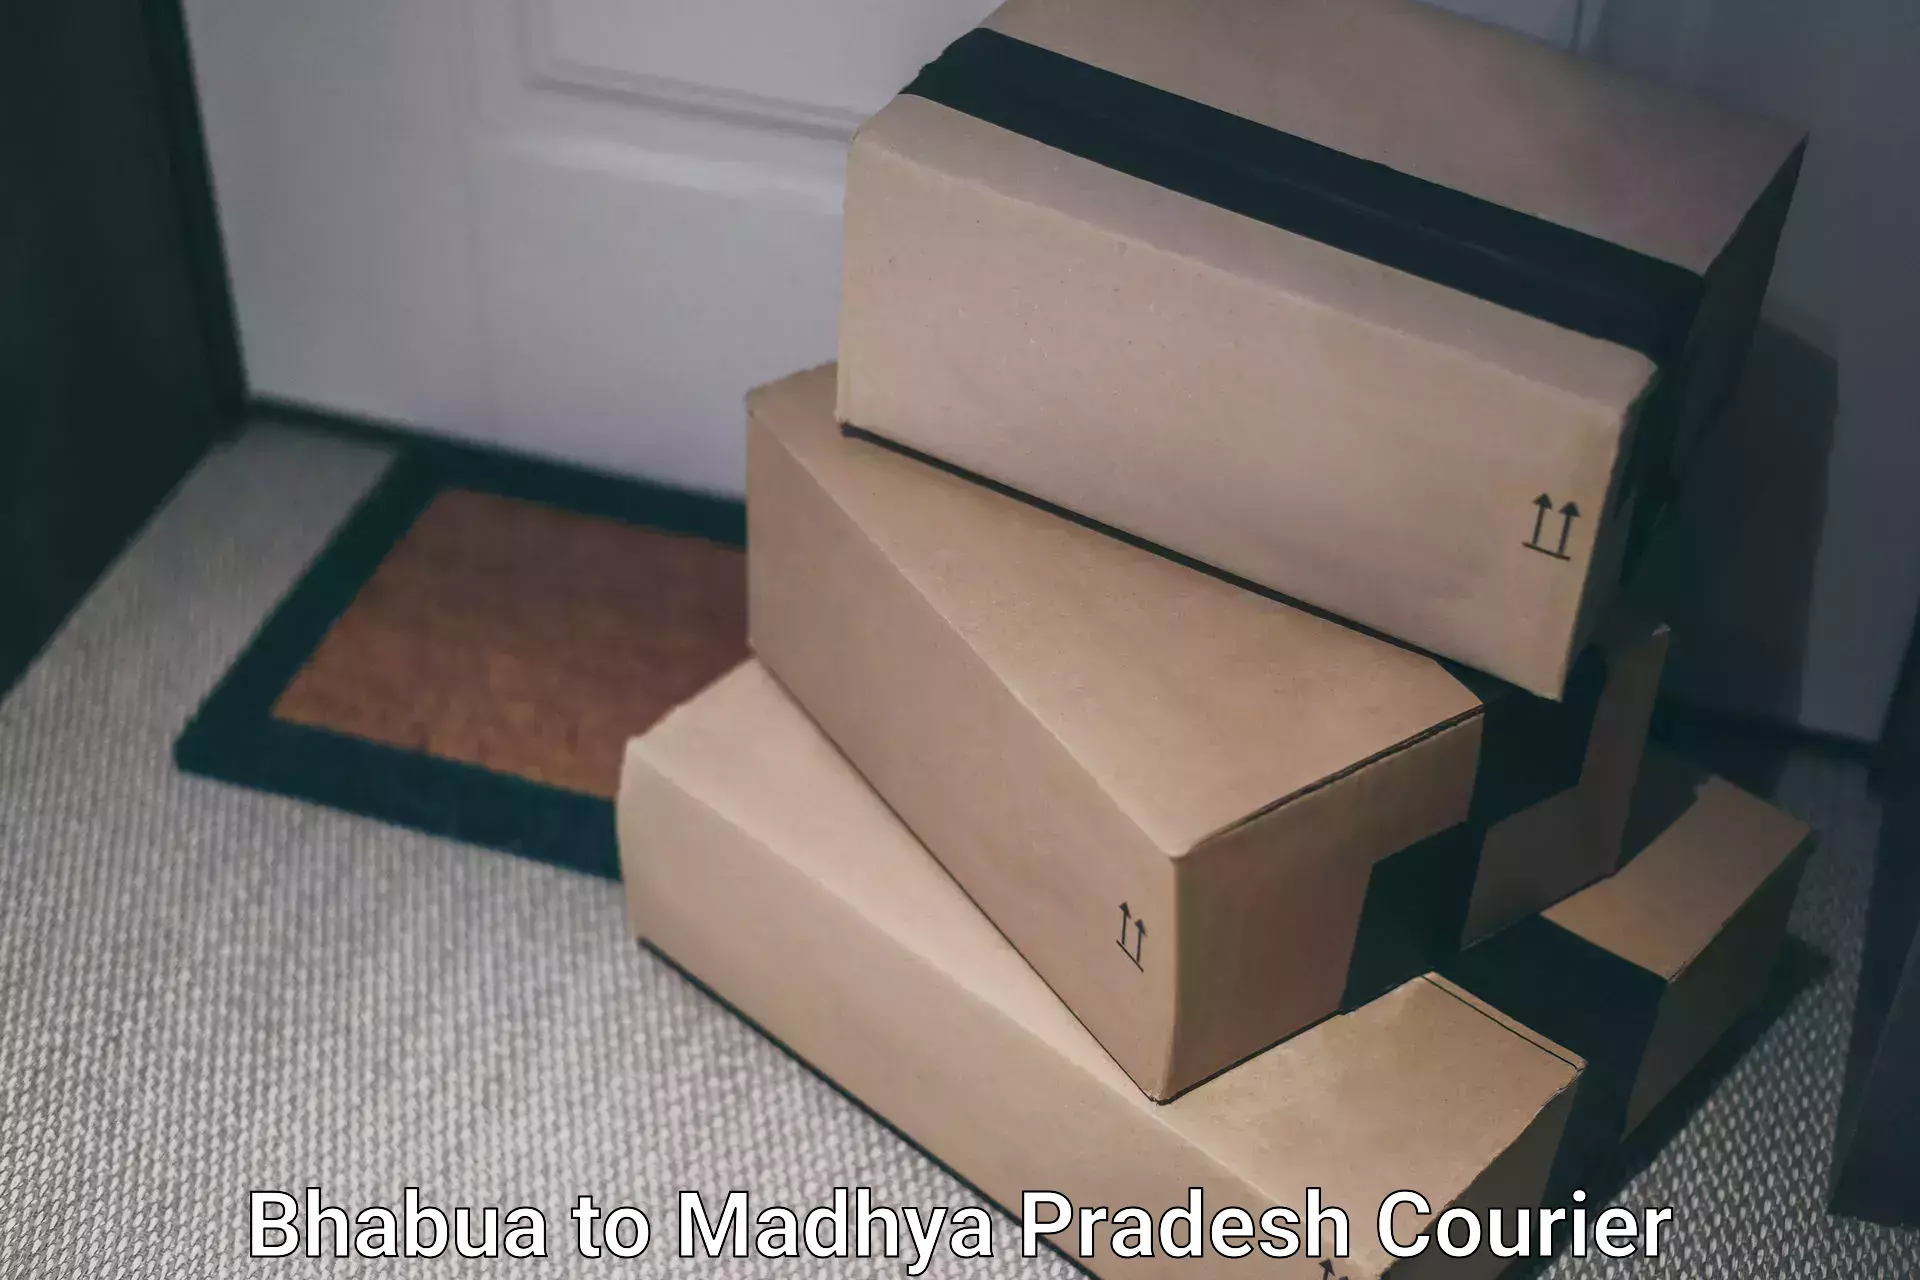 Premium courier solutions Bhabua to Madhya Pradesh